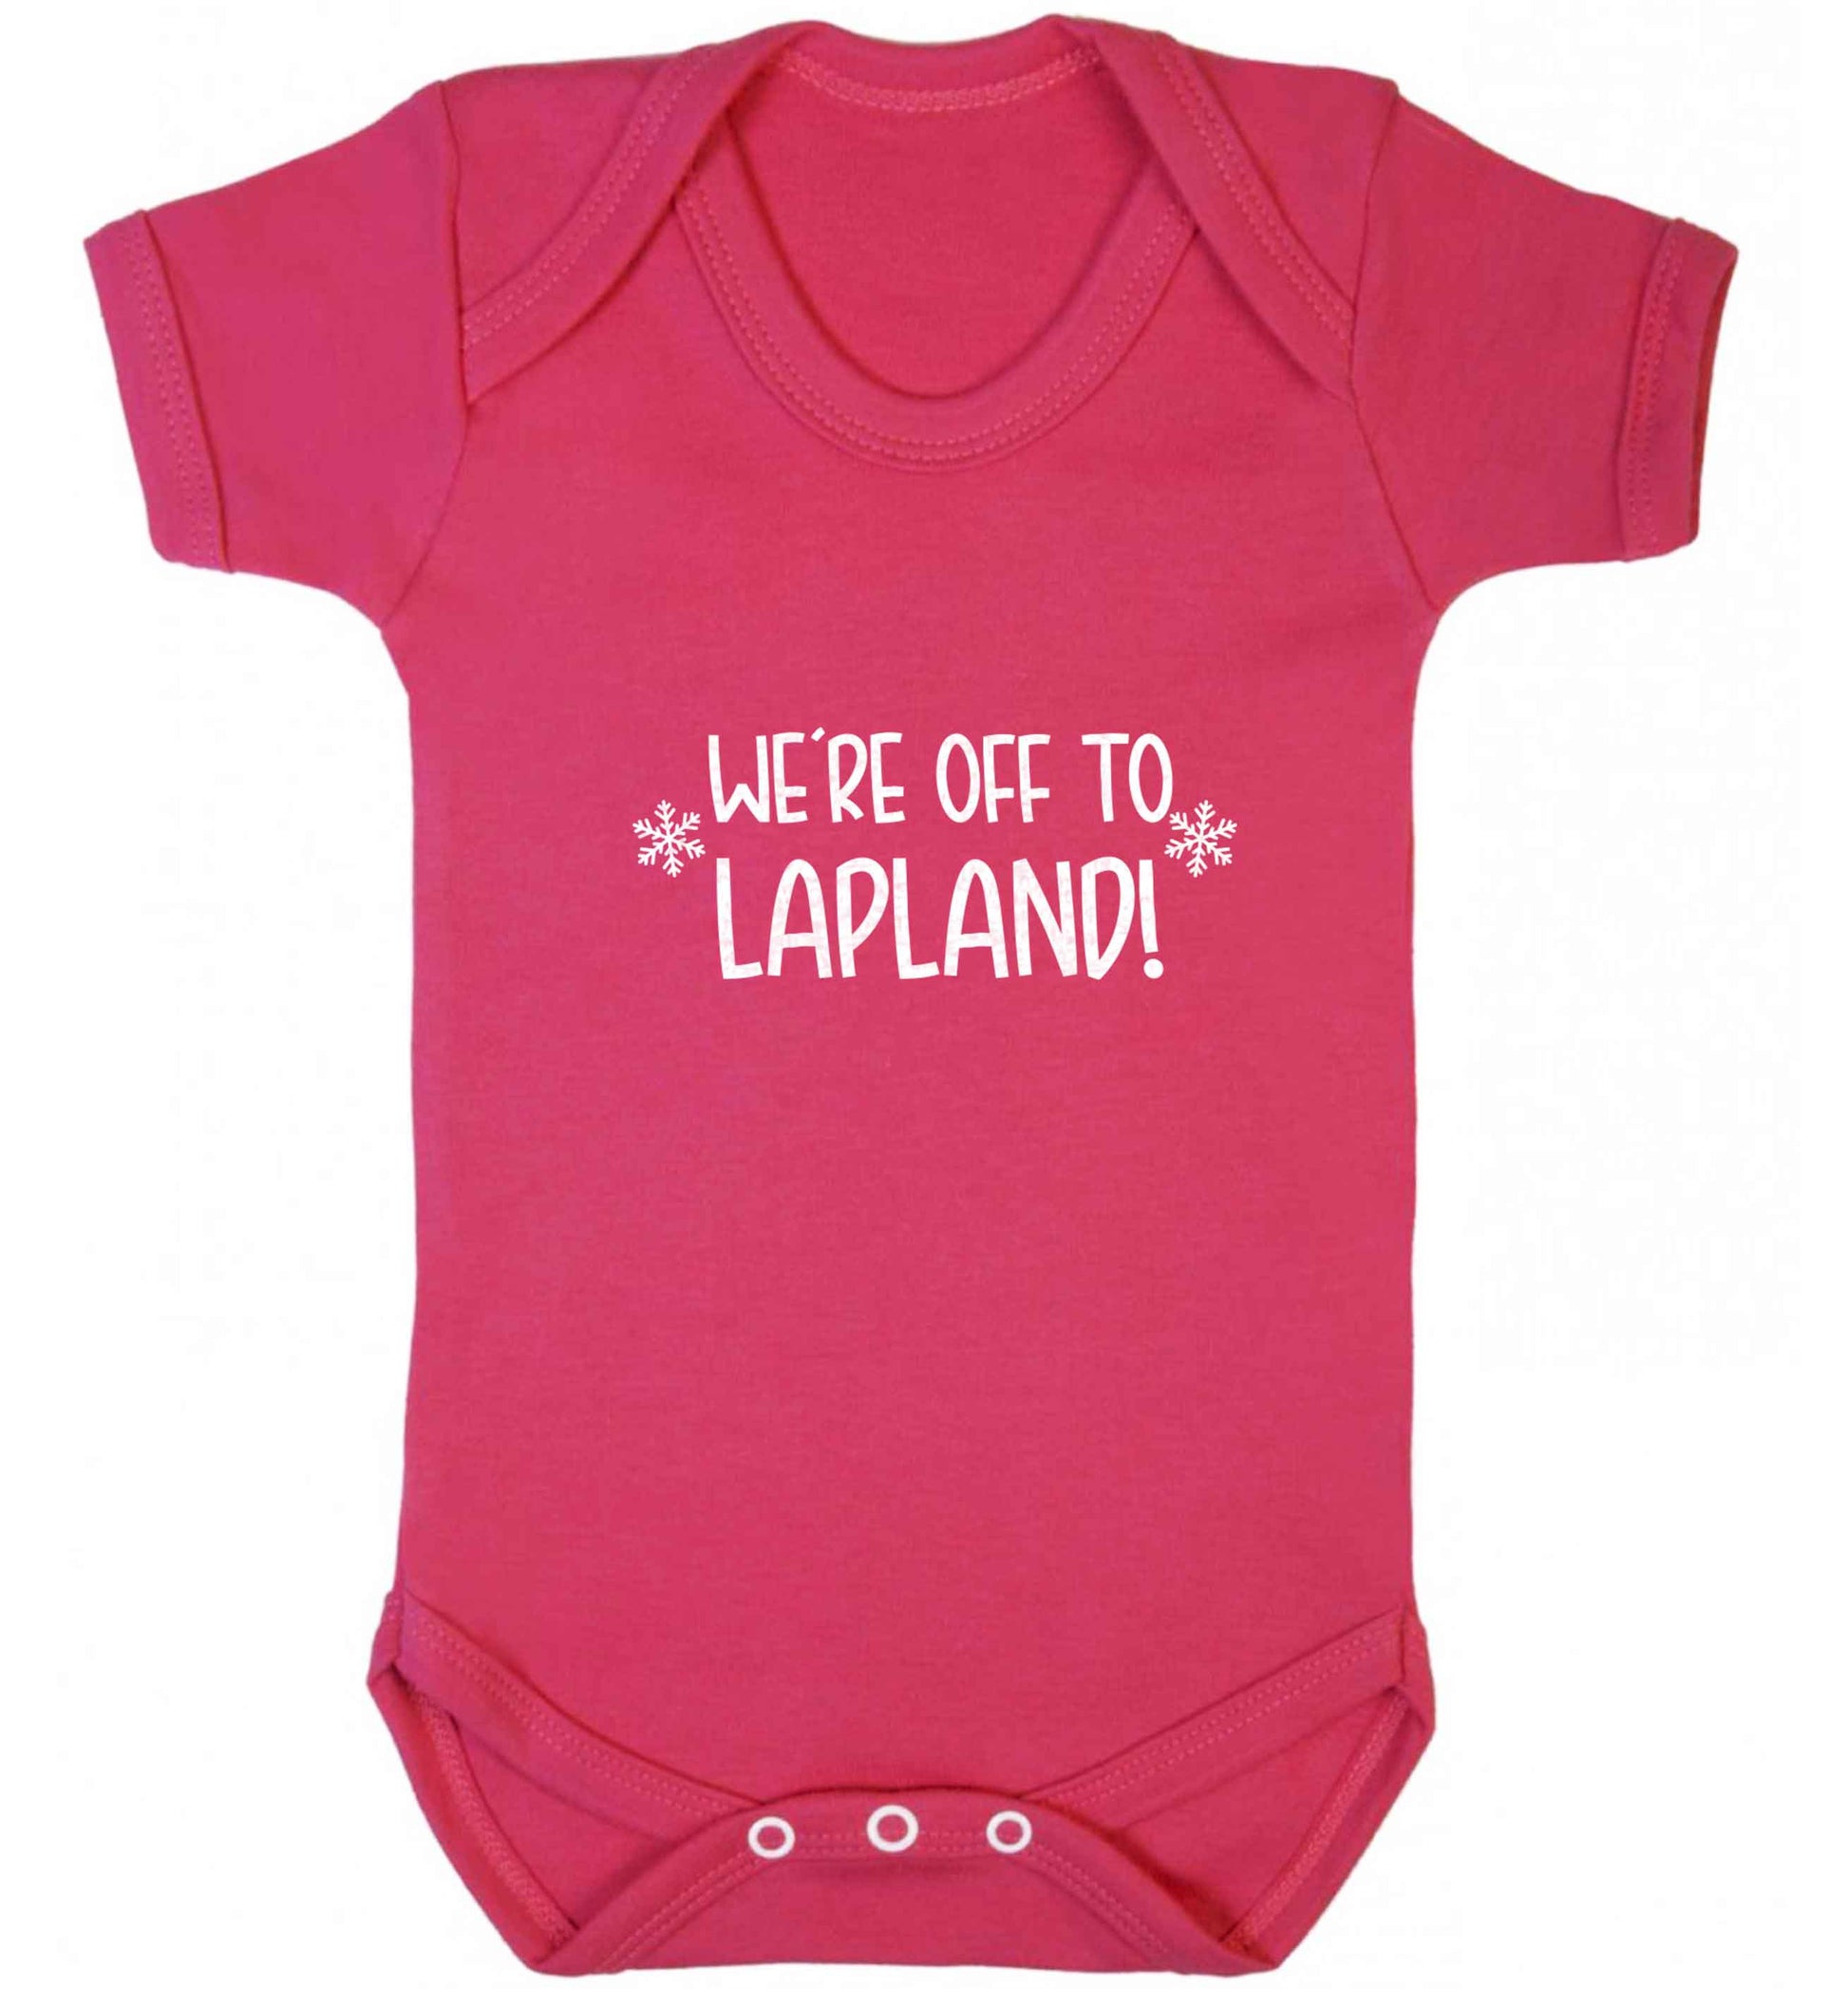 We're off to Lapland baby vest dark pink 18-24 months